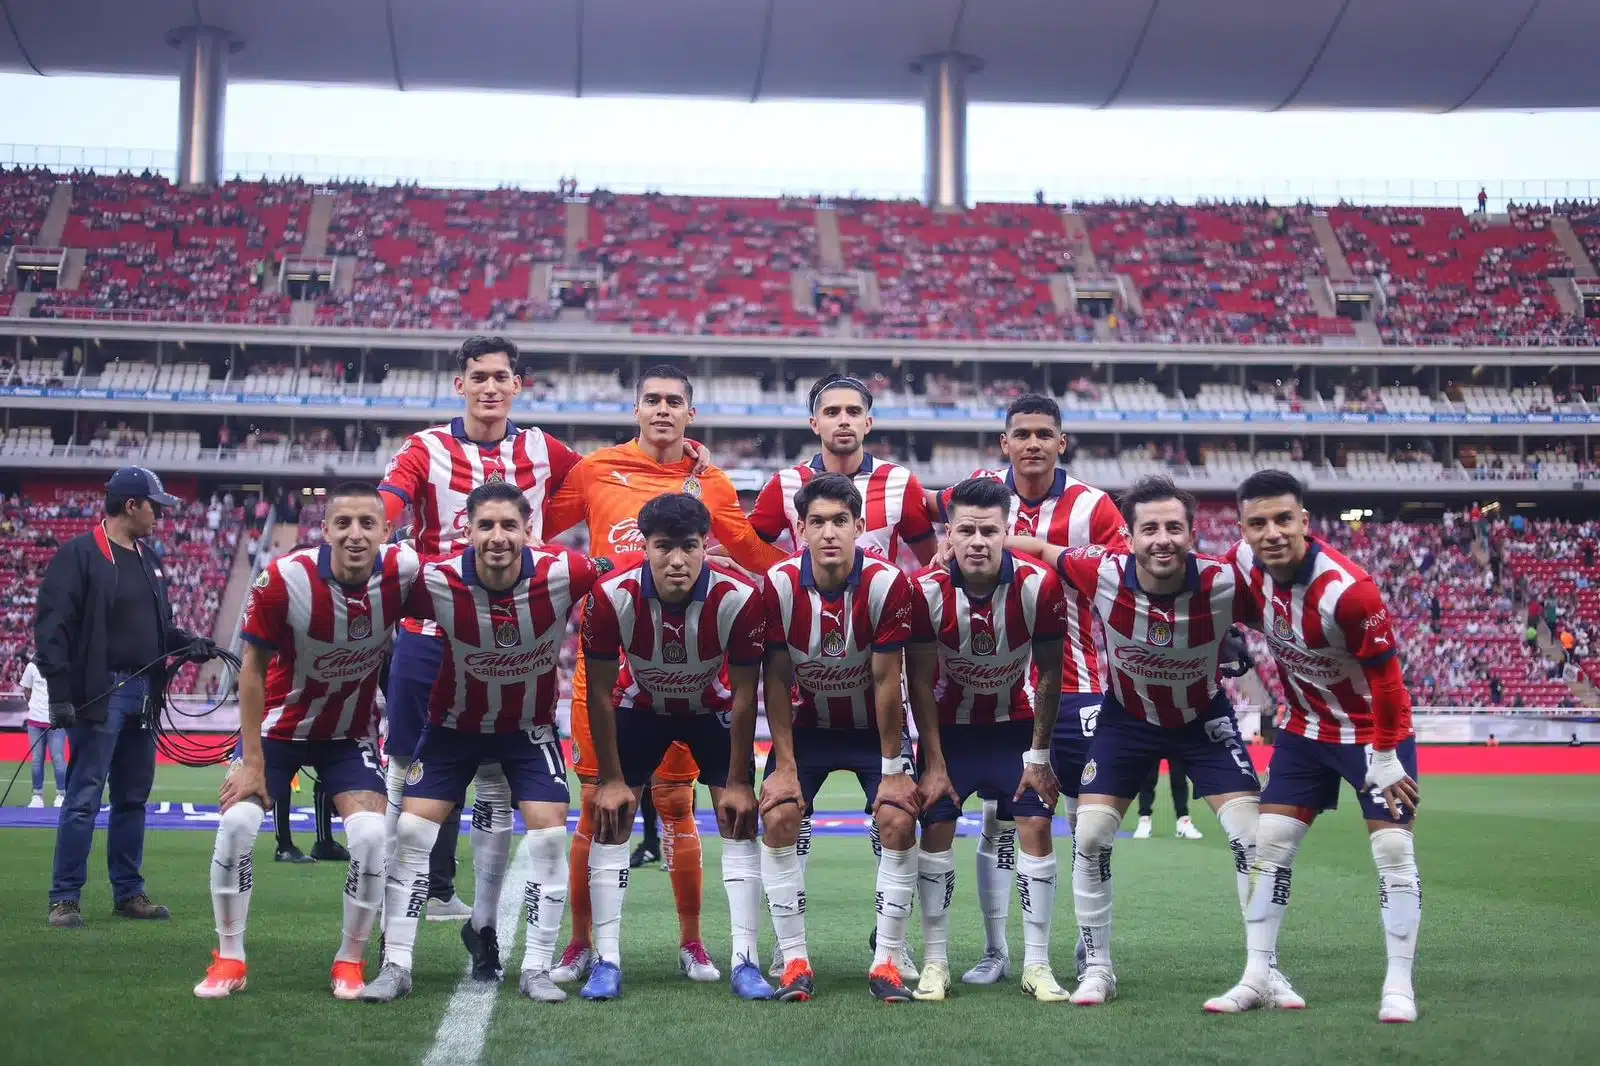 11 jugadores del club Chivas del Guadalajara de la Liga MX en el estadio Akron posando para una foto antes del partido vs Gallos Blancos del Querétaro